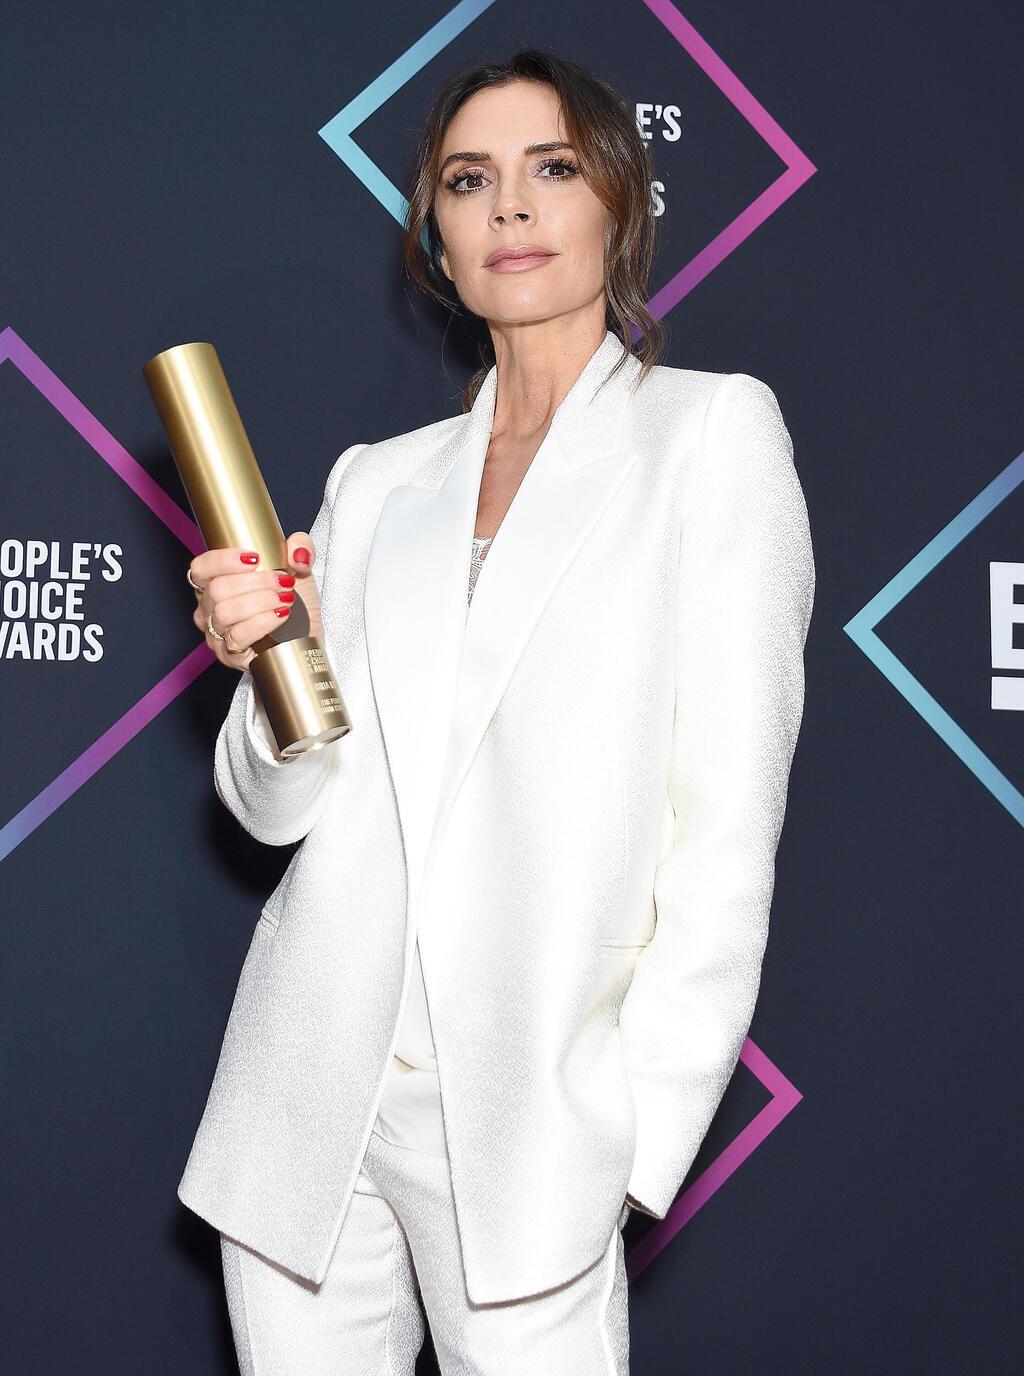 ויקטוריה בקהאם זוכה בפרס אייקון האופנה בטקס פיפל'ס צ'ויס, 2018